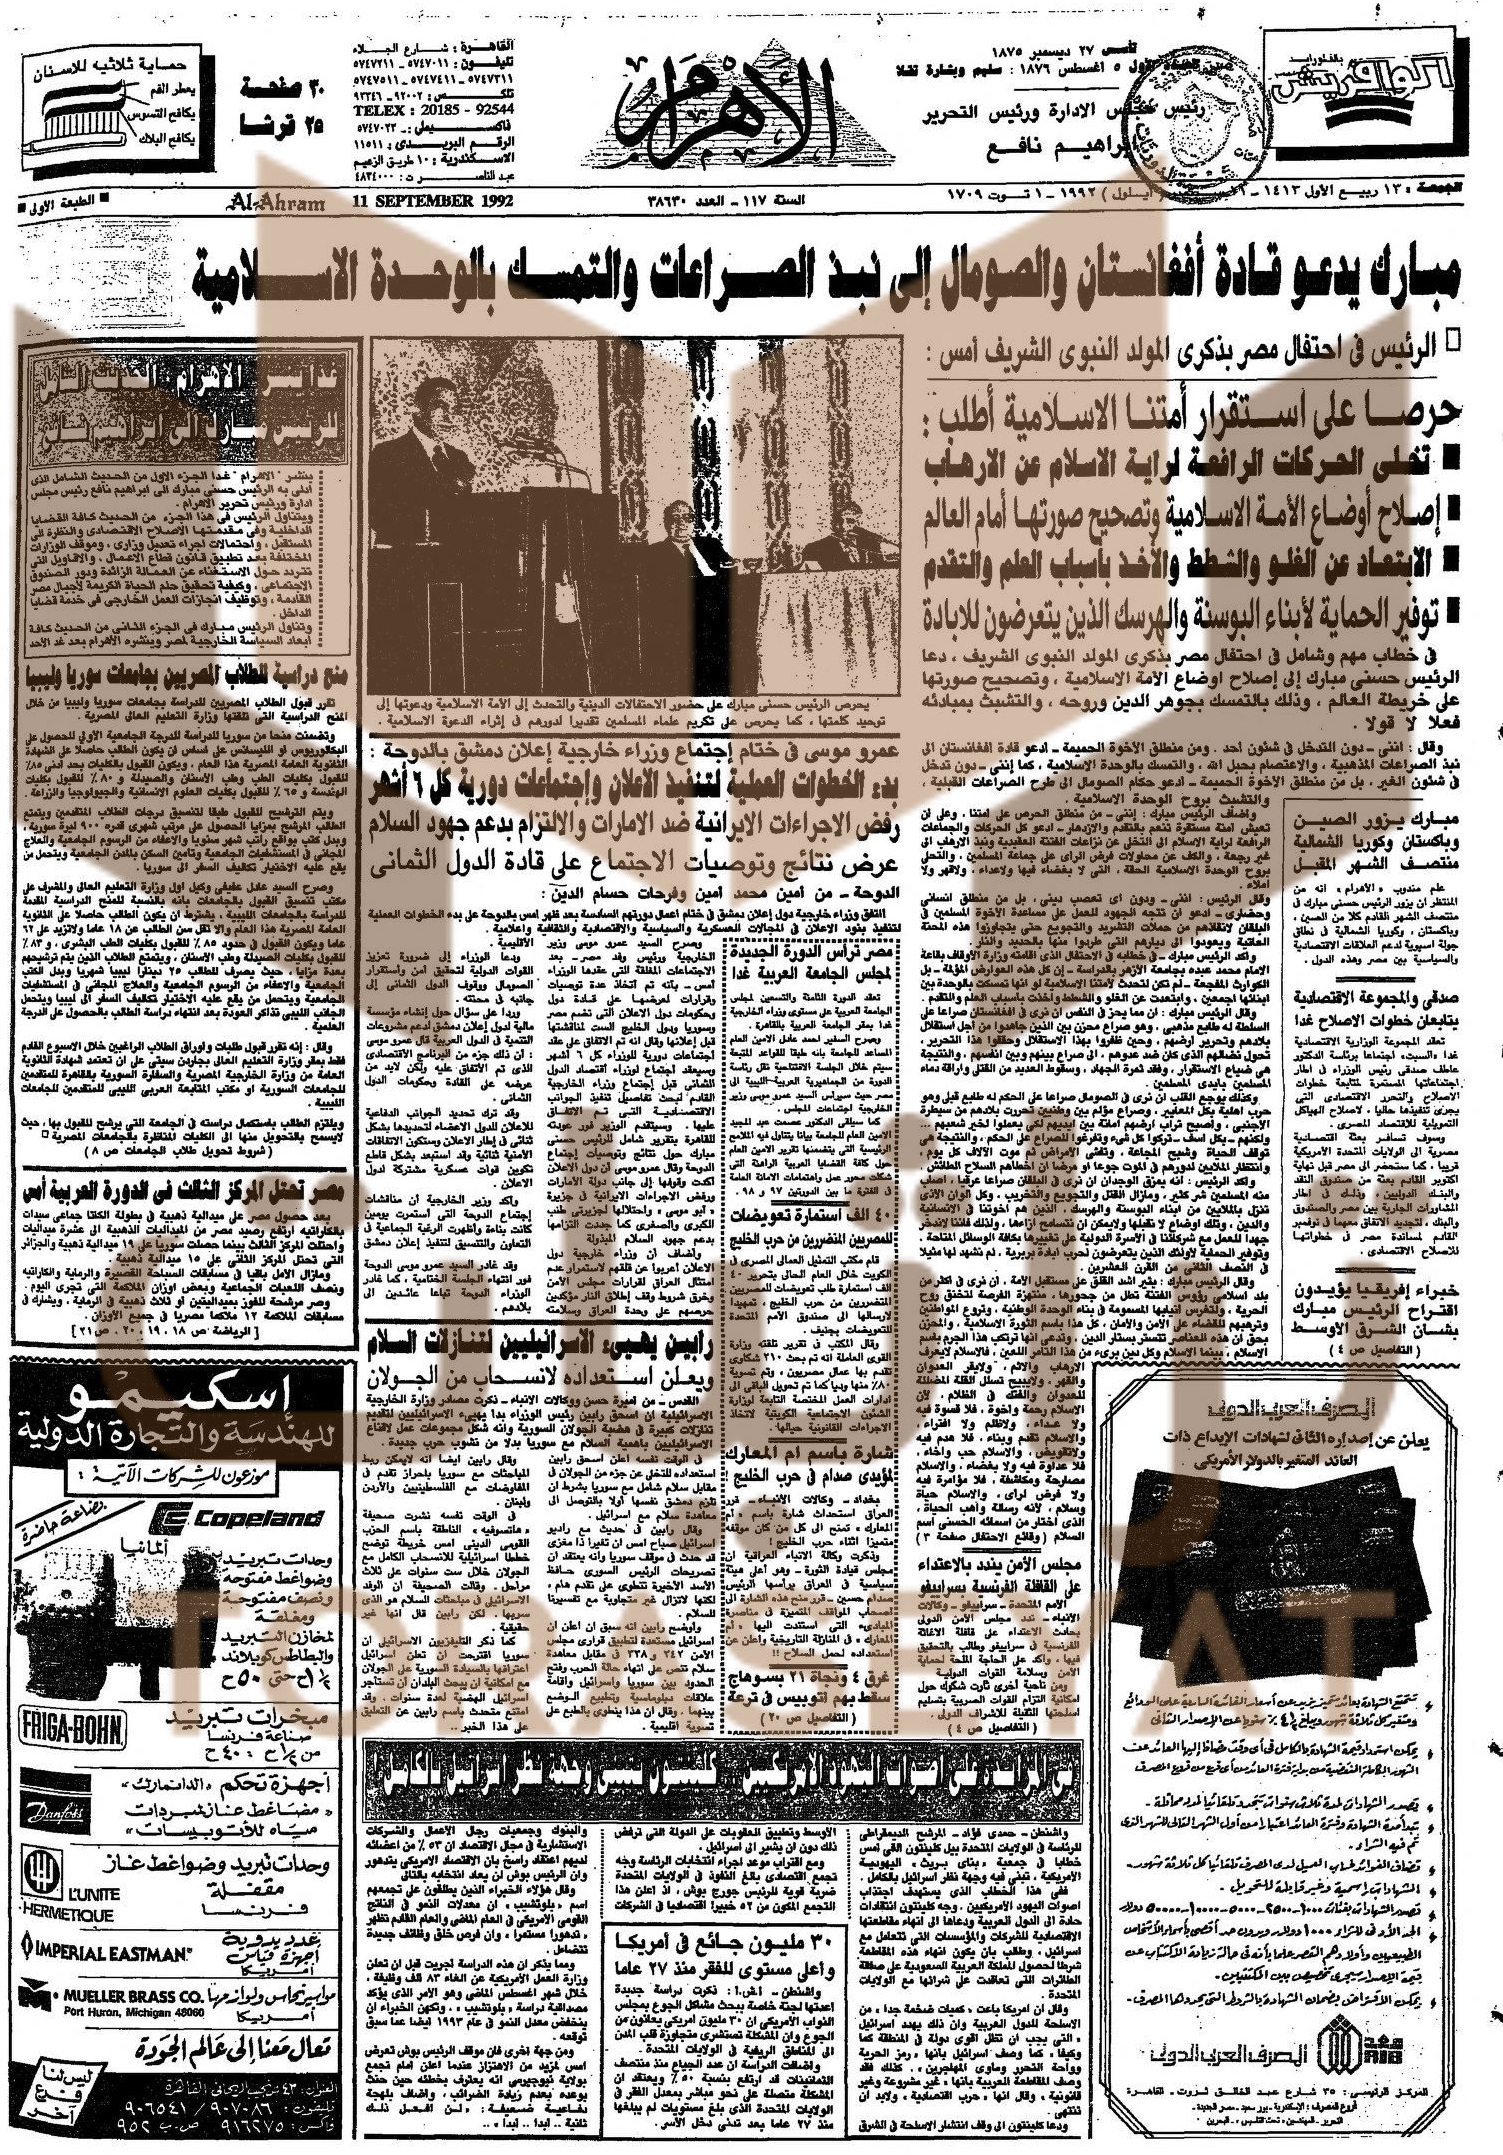 كلمة مبارك في المولد النبوي - 11 سبتمبر 1992